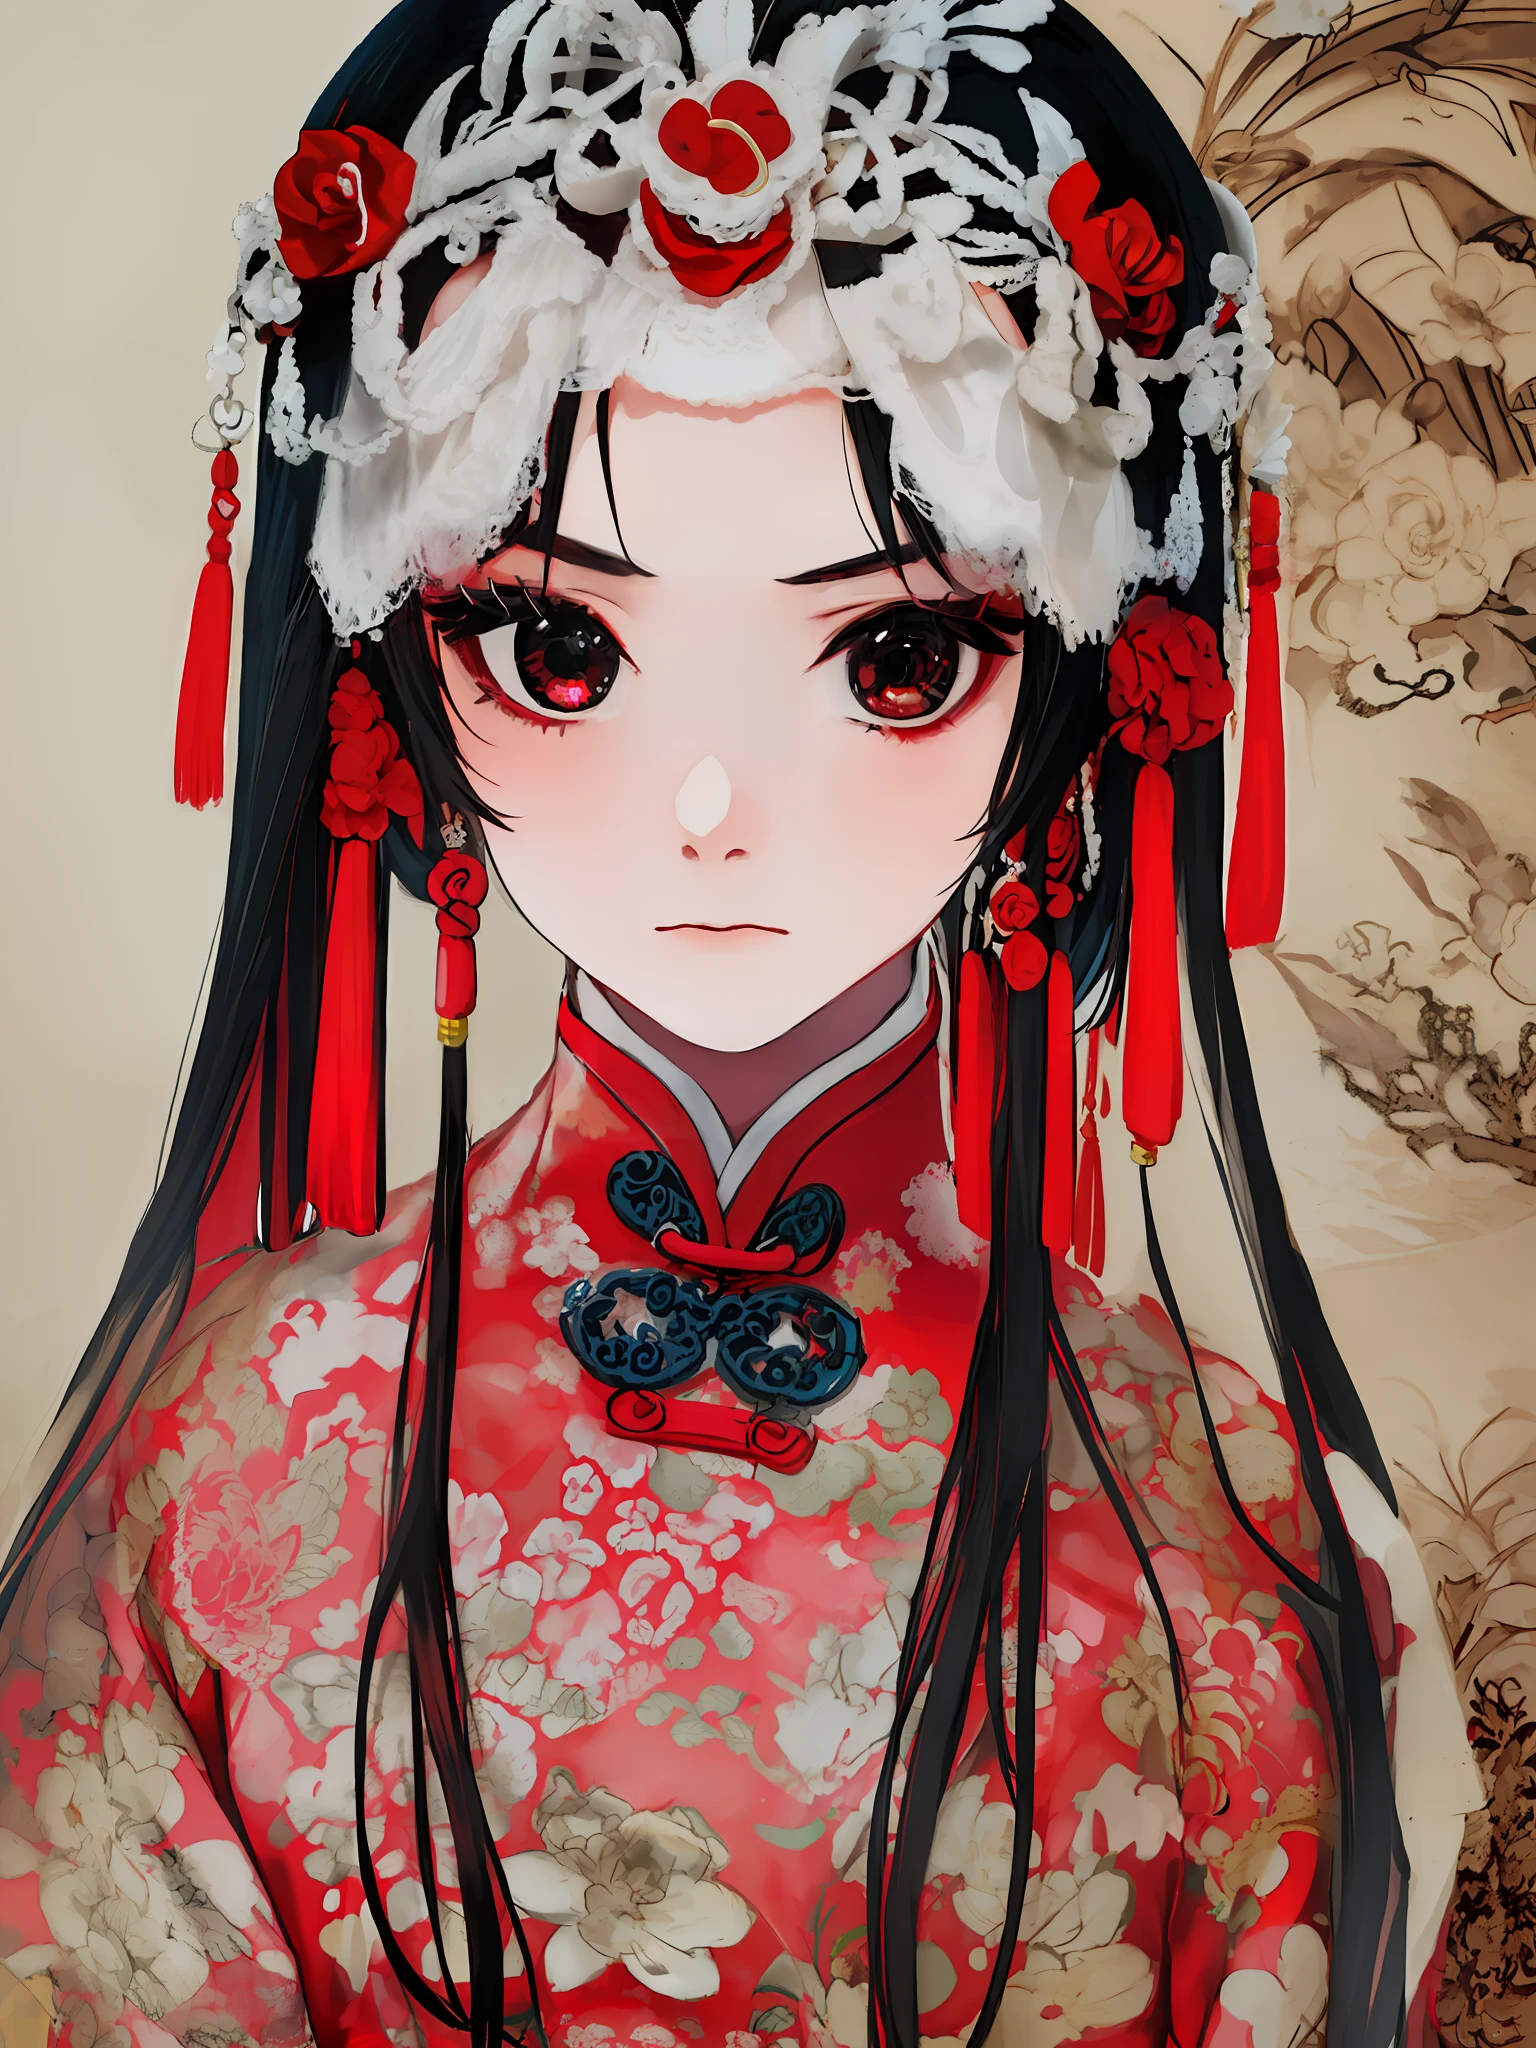 소녀 1명, 길고 검은 머리, 큰 눈이 영혼을 사로잡는다, 중국 전통의 붉은색 웨딩드레스를 입고  , 슬픈 표정,